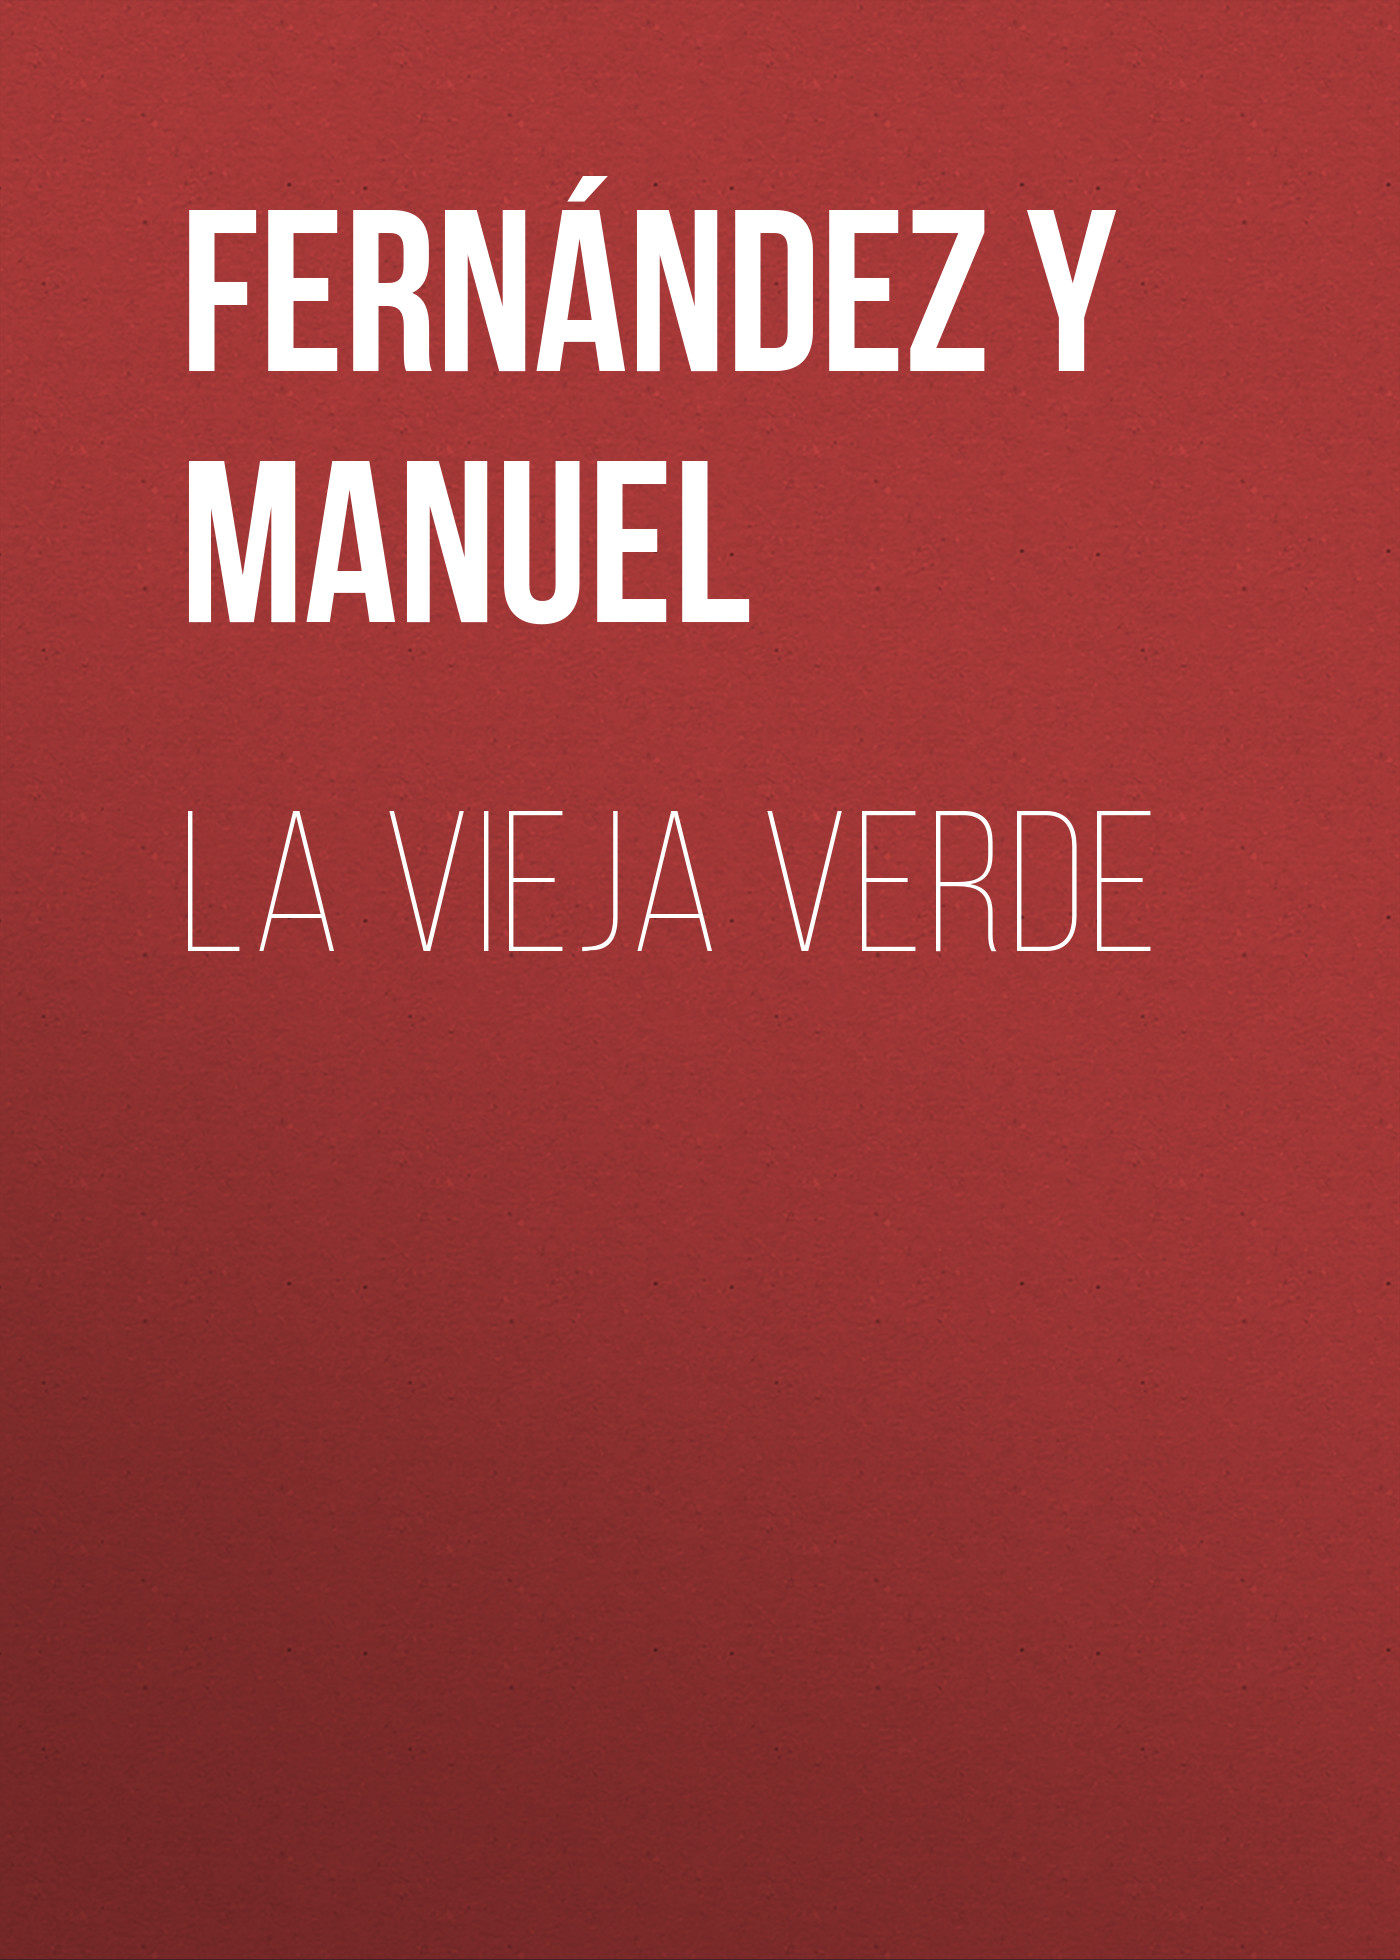 Книга La vieja verde из серии , созданная Manuel Fernández y González, может относится к жанру Зарубежная старинная литература, Зарубежная классика. Стоимость электронной книги La vieja verde с идентификатором 24728913 составляет 0 руб.